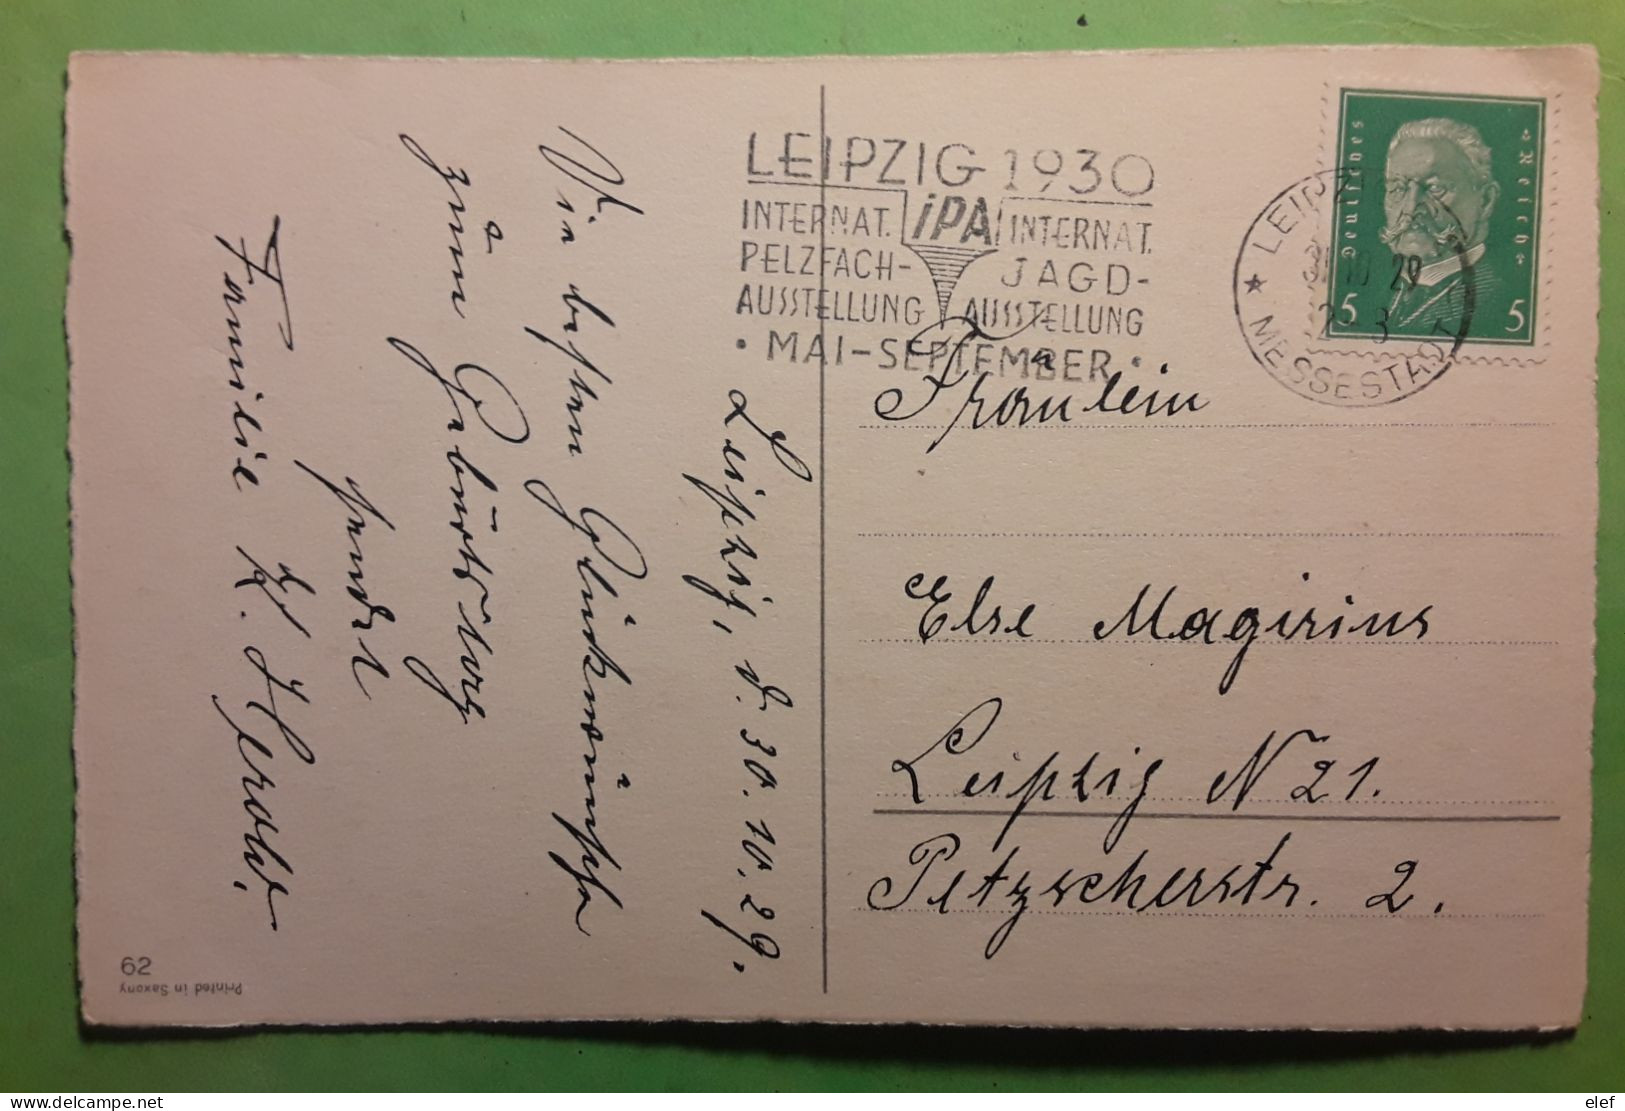 Flamme Chasse   IPA Internat PELZFACH JAGD AUSTELLUNG LEIPZIG 1930,Deutsches Reich Postkarte Gluckwunsch Z Geburtstage - Tir (Armes)